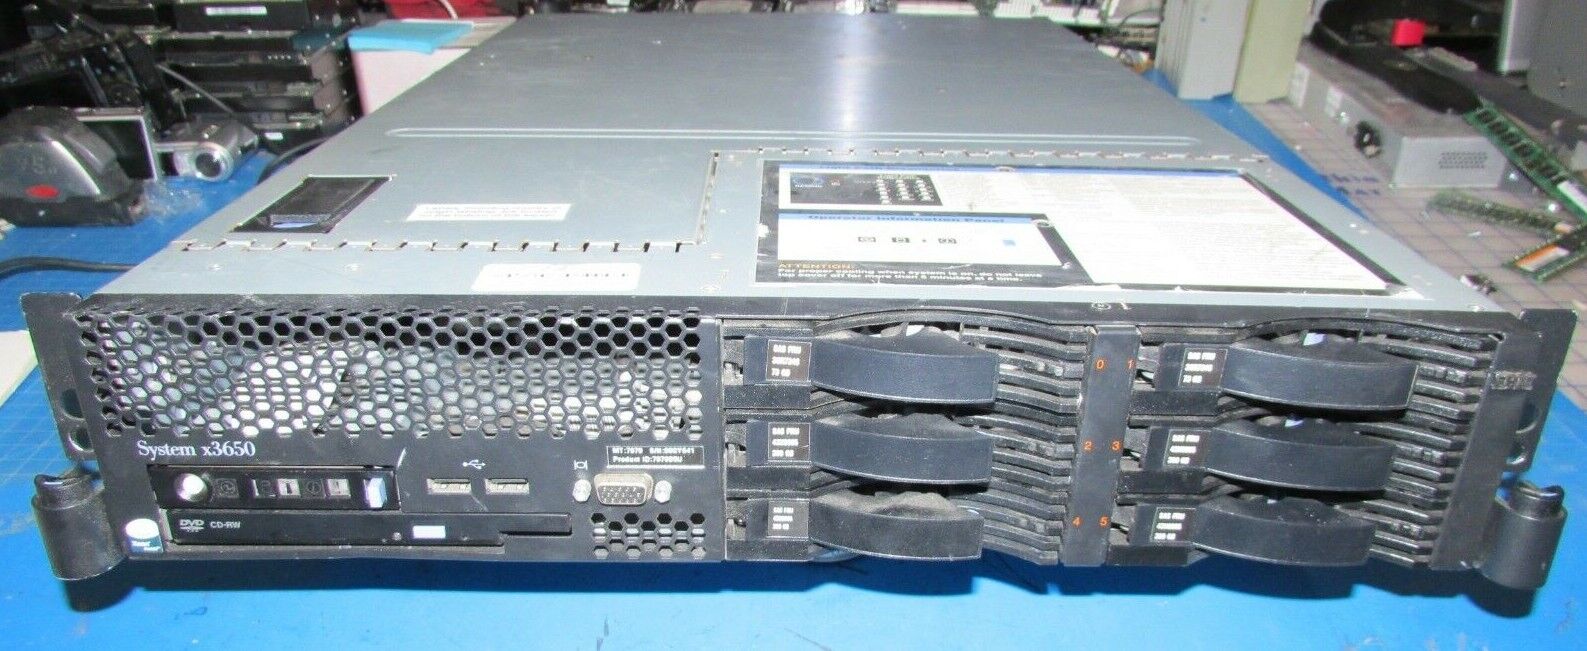  IBM X3650 7979BEU 2U SFF Server - 2x Xeon E5440 2.83GHz, 32GB, 5 X 15K HDD